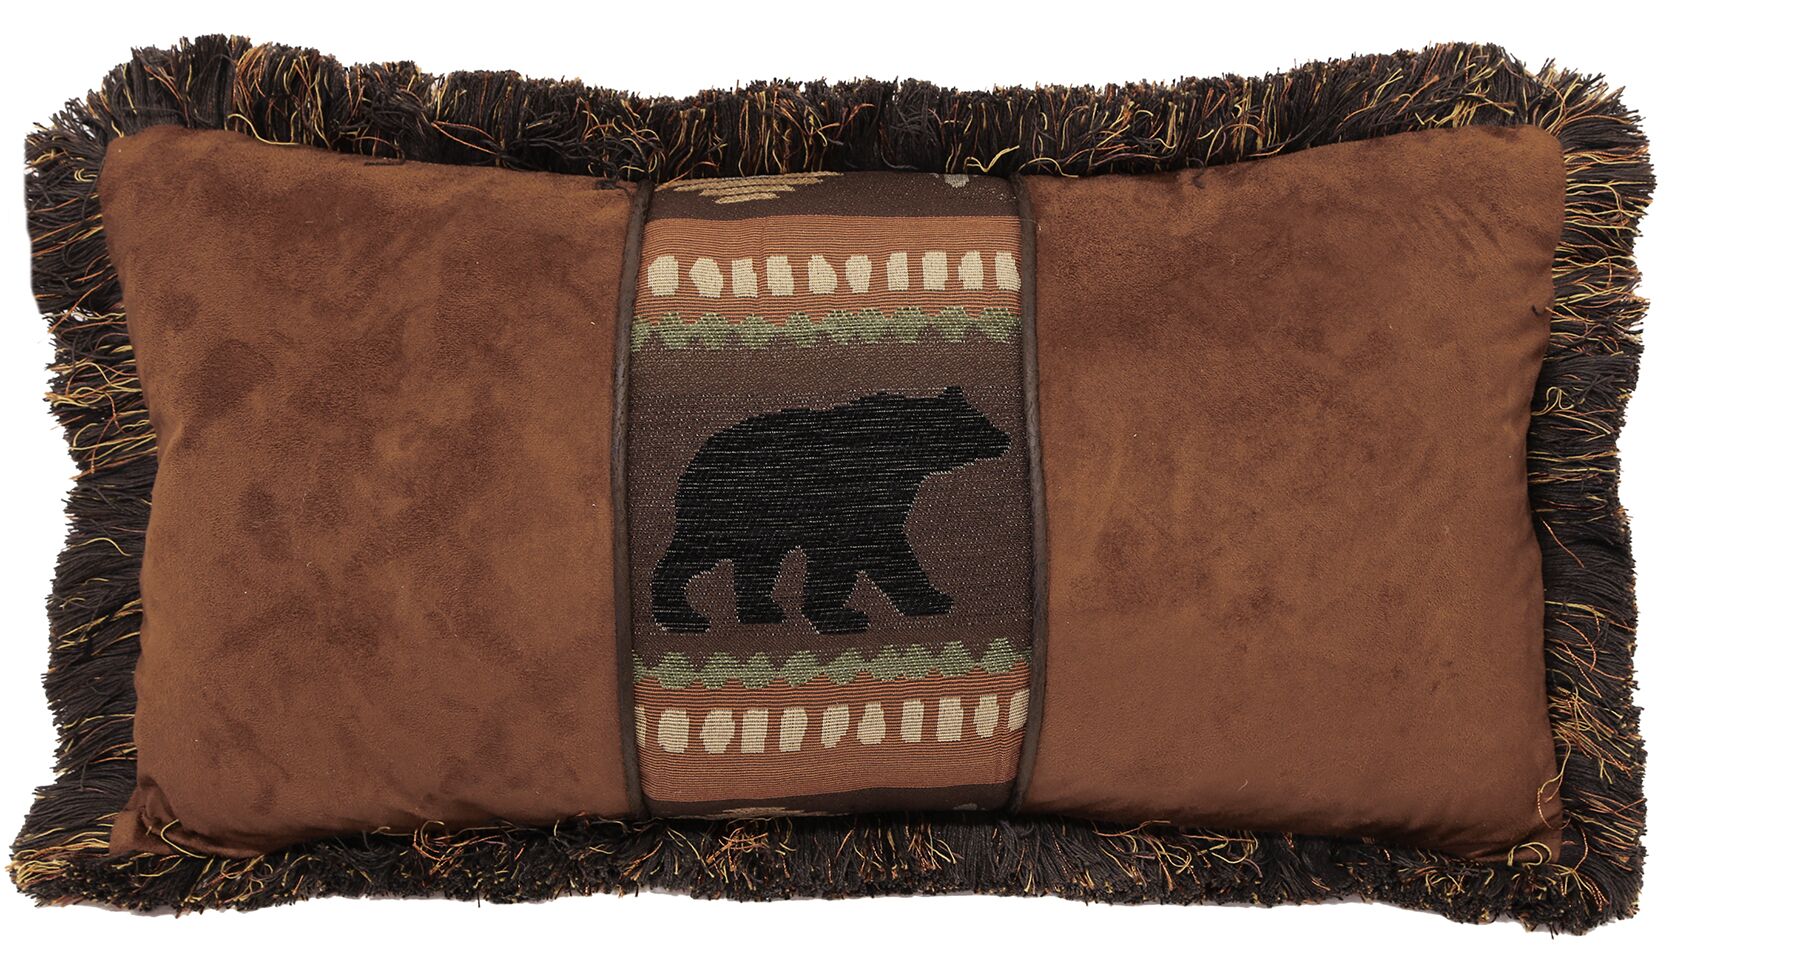 Autumn Trails Bear and Chestnut Pillow Carstens - Unique Linens Online